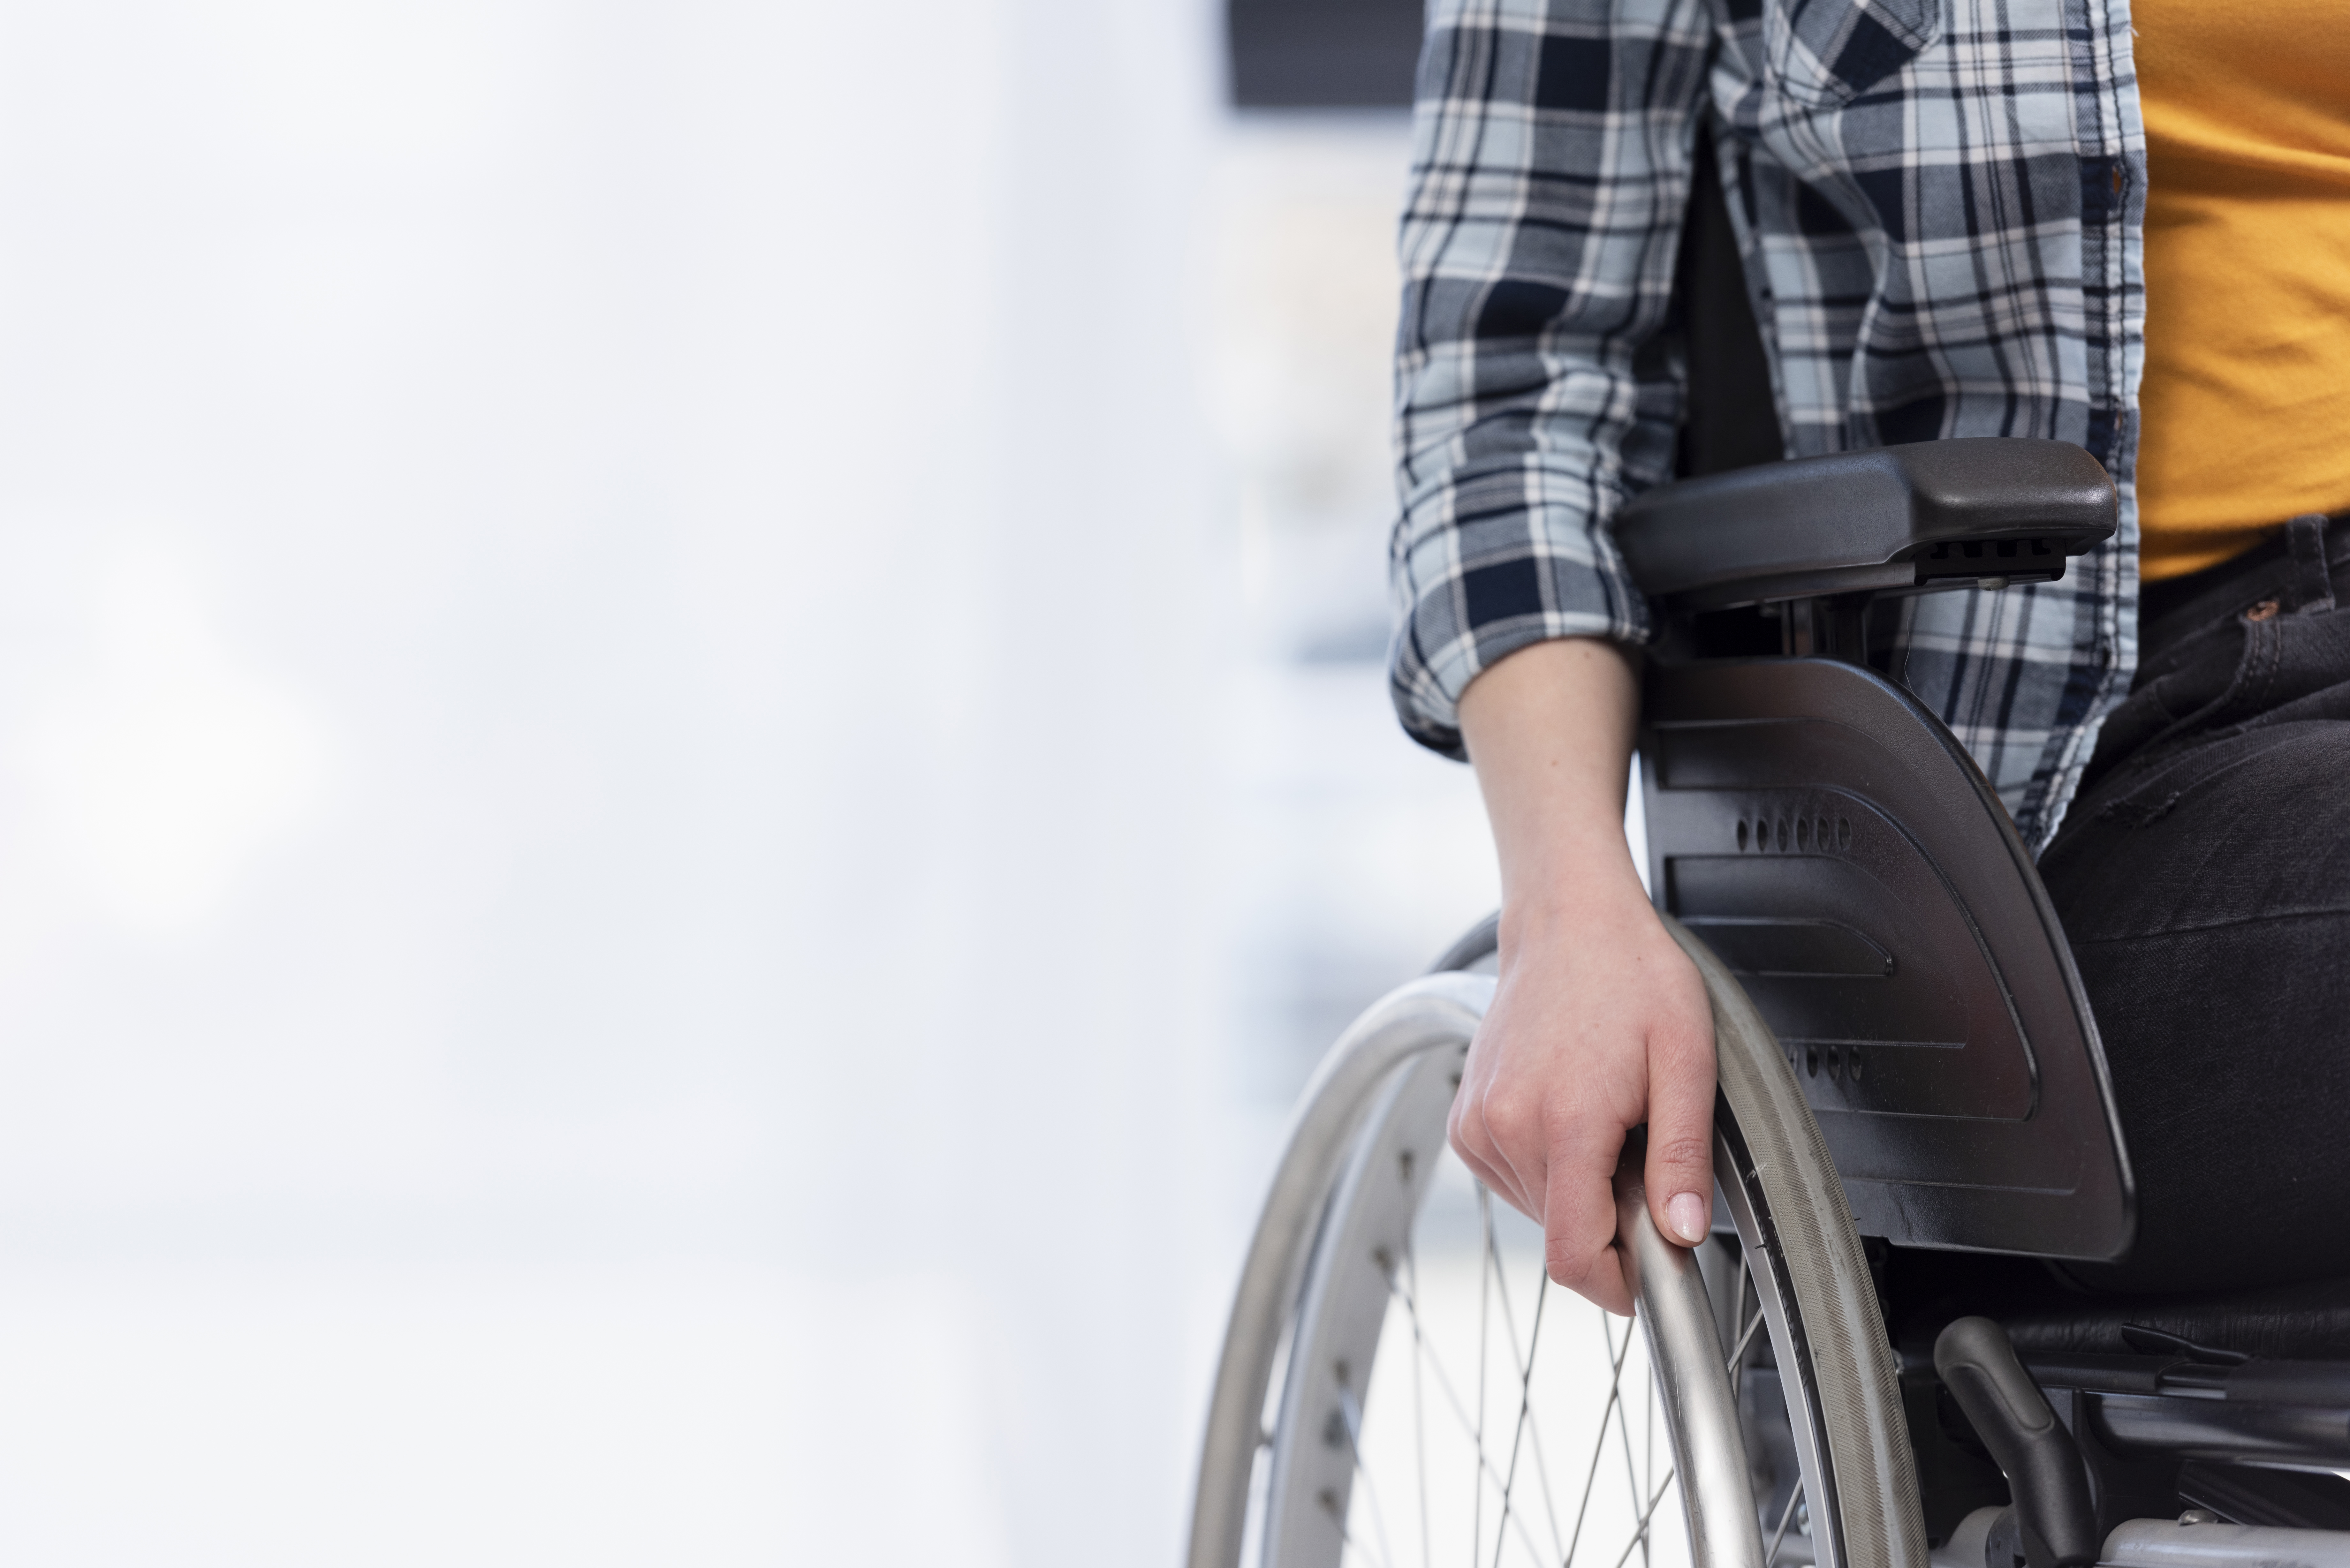 Una persona en silla de ruedas